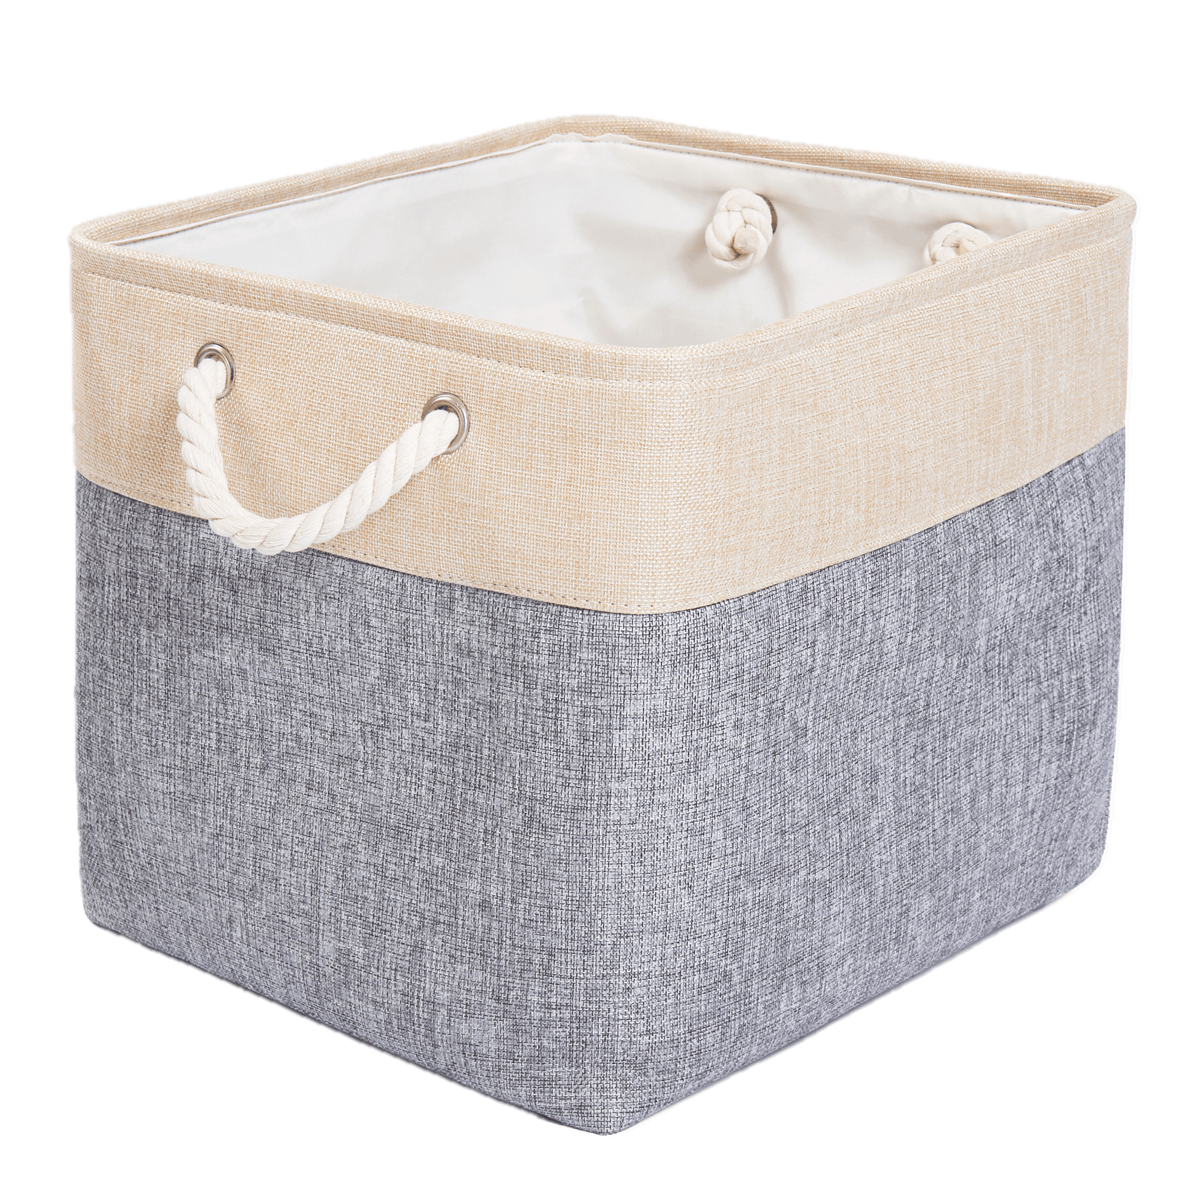 Washable Fabric Storage Boxes Foldable Basket Organizers Blue